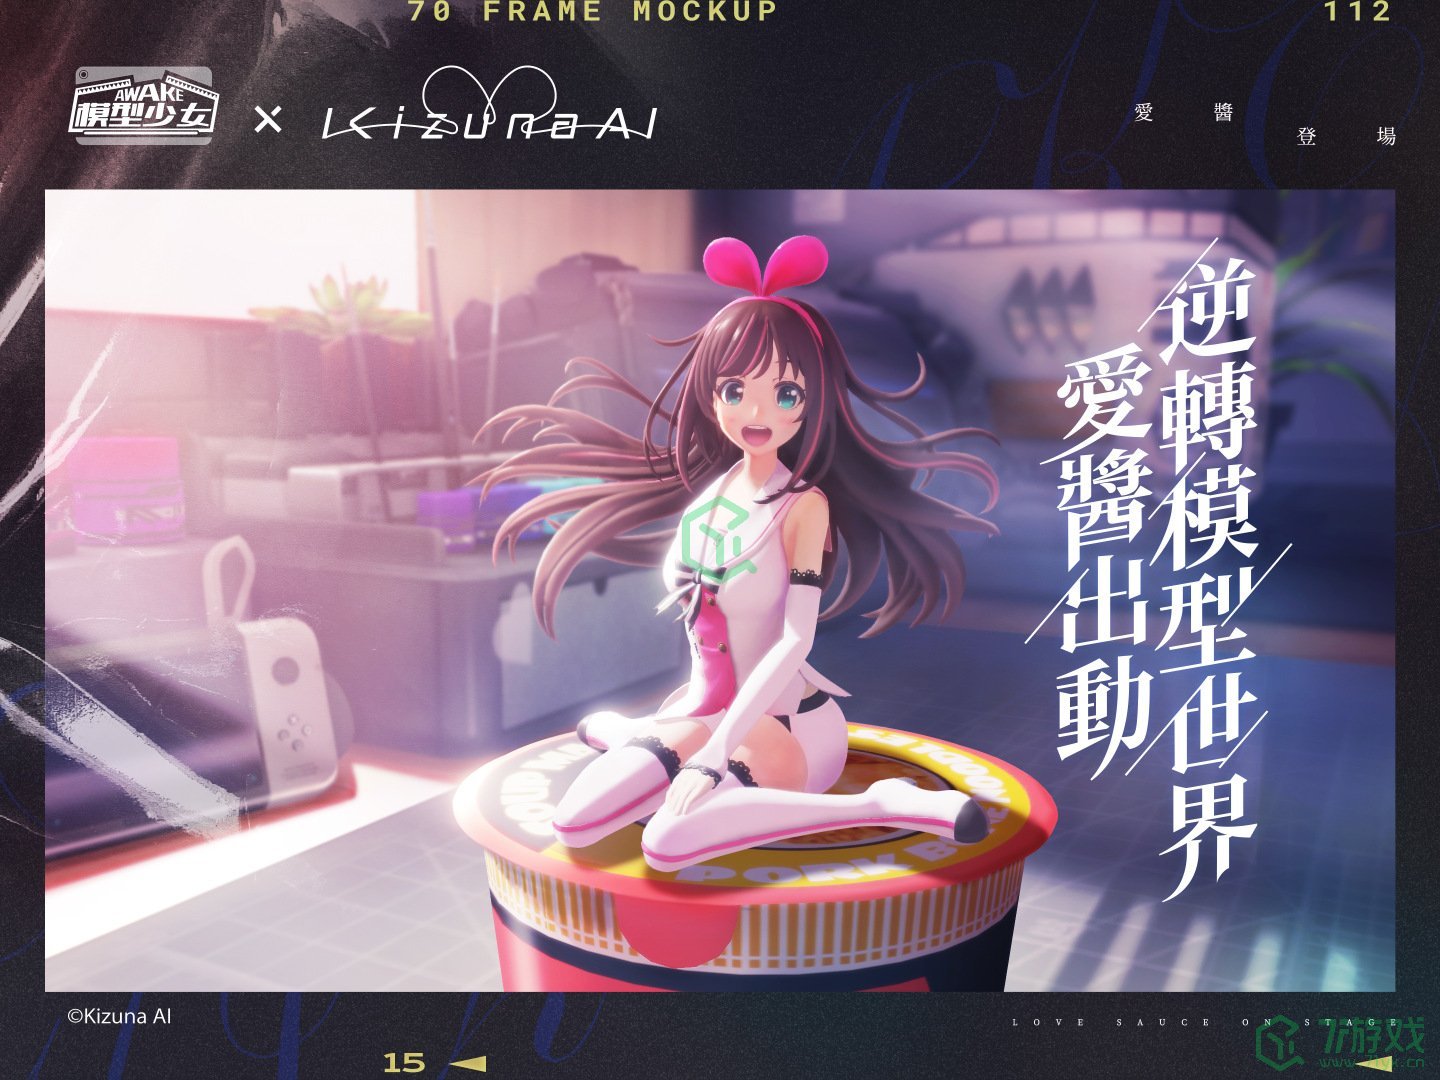 《模型少女AWAKE》X「Kizuna AI」联动确定虚拟美少女